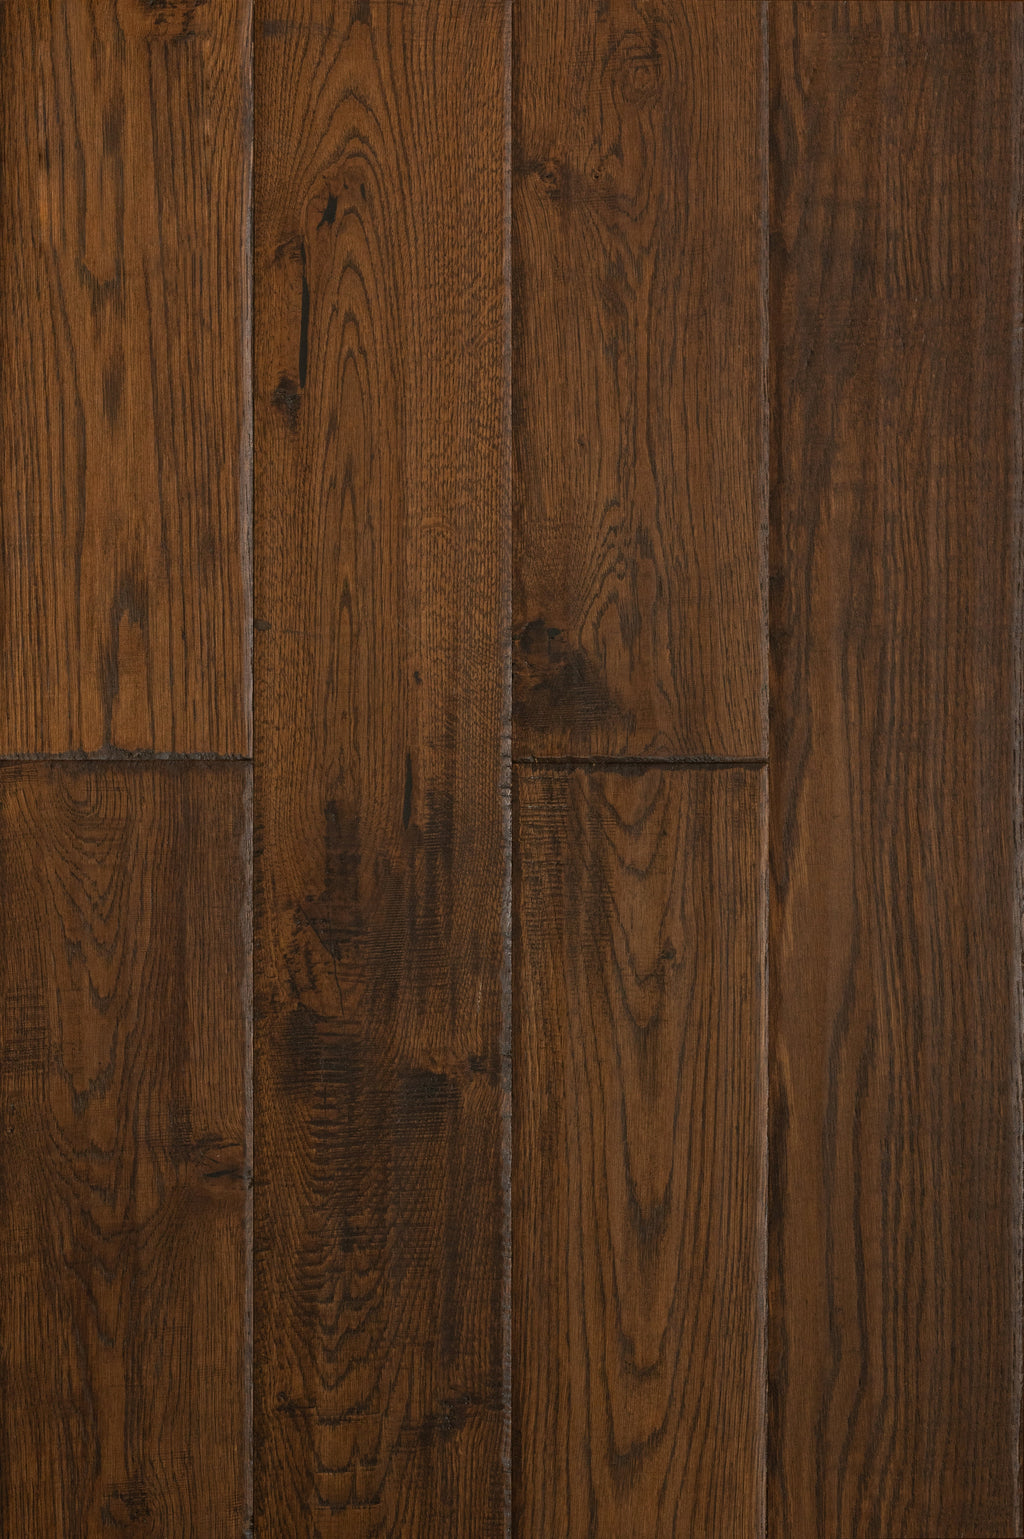 East West Furniture SP-5OH04 Sango Premier Engineered Hardwood Floor - European Oak - 1/2 in x 7 in x Random Length Handscraped, 26.24 sqft/box, Spice Brown